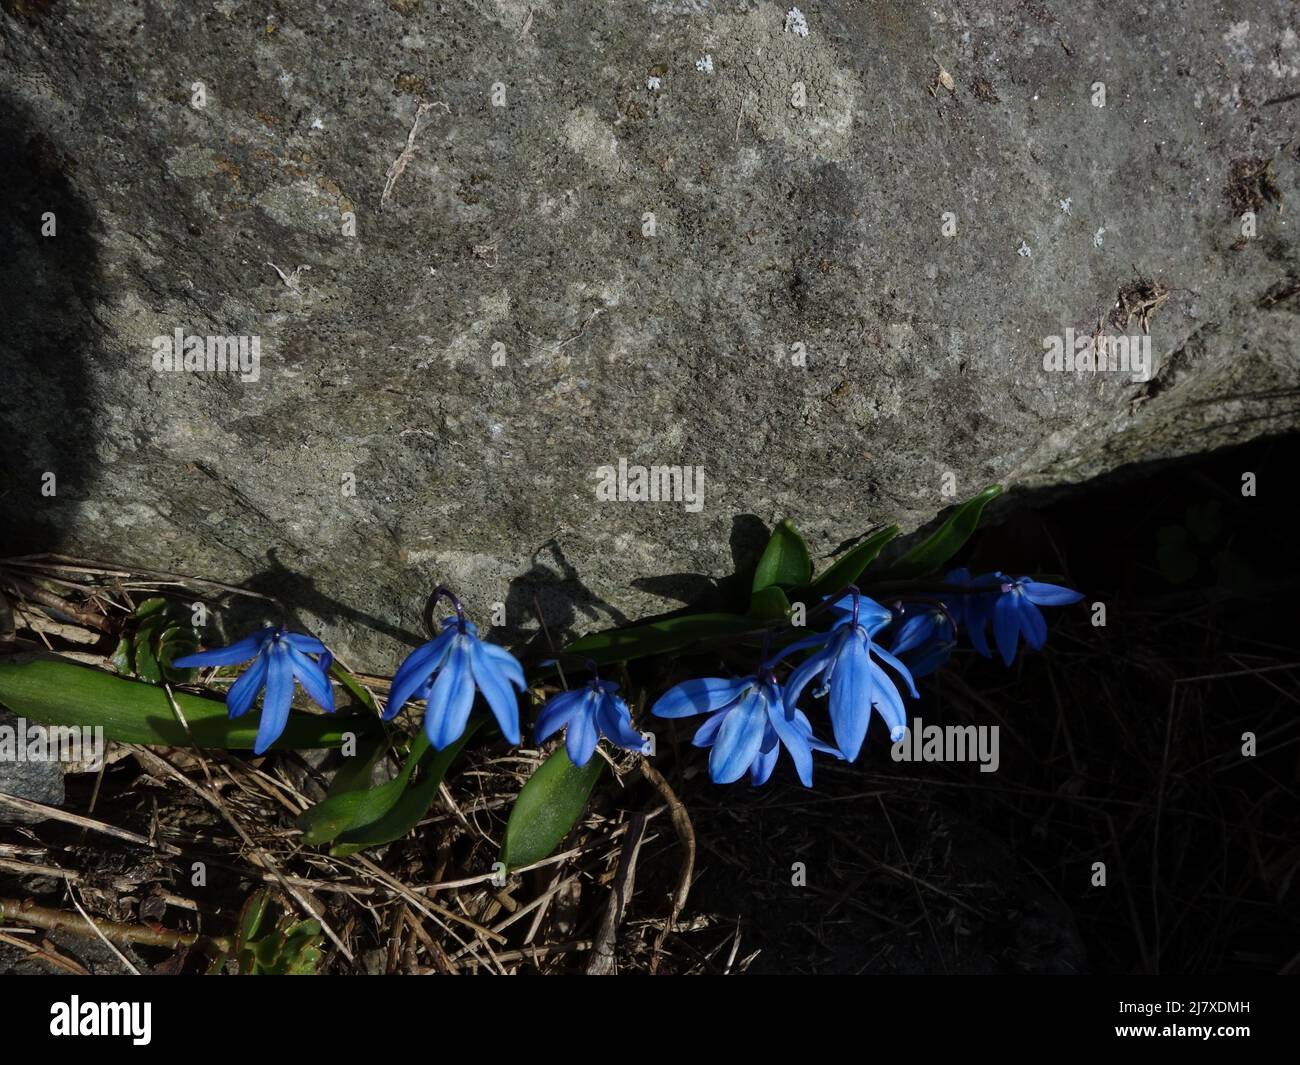 Die erste Scilla siberica dieses Frühlings, die mit gebeugten Köpfen nahe an einem großen Felsen steht. Ursprünglich eine alte Gartenpflanze, die zu einer wilden Blume wurde Stockfoto